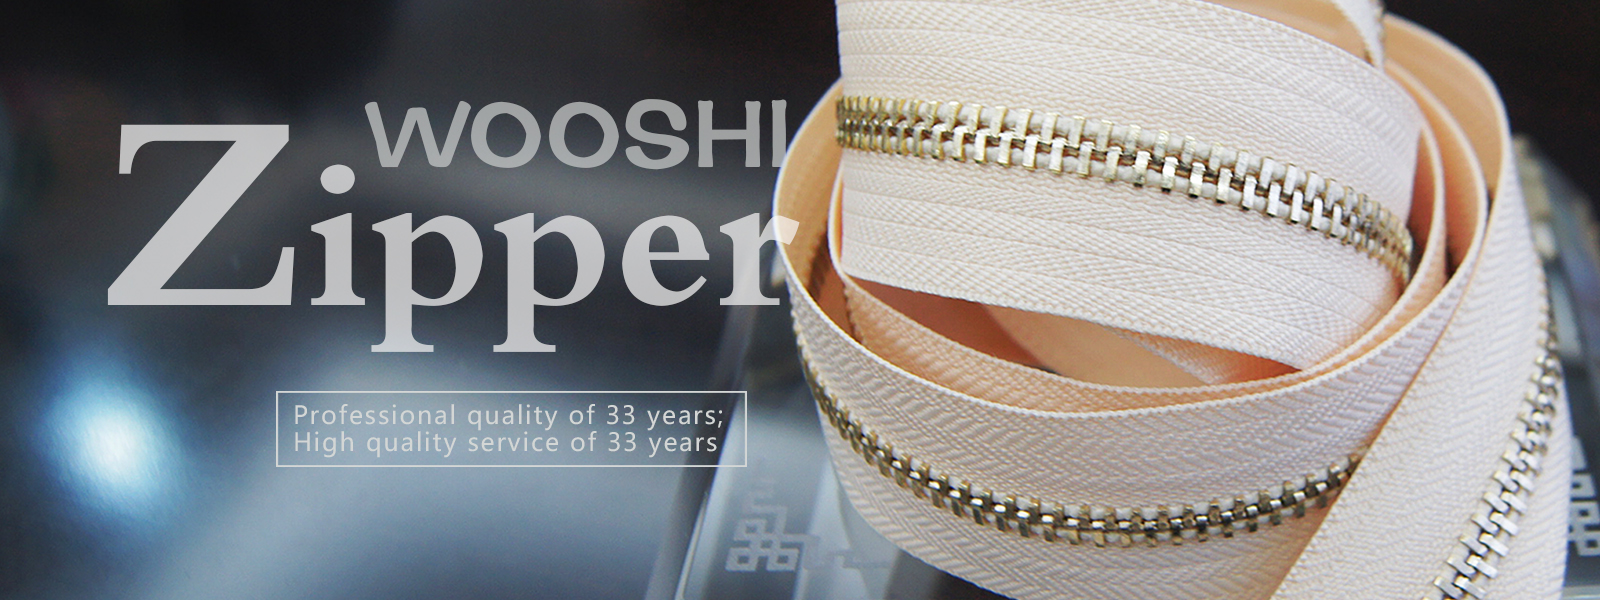 Nylon-Zipper-Wholesale-Wooshi-Zipper